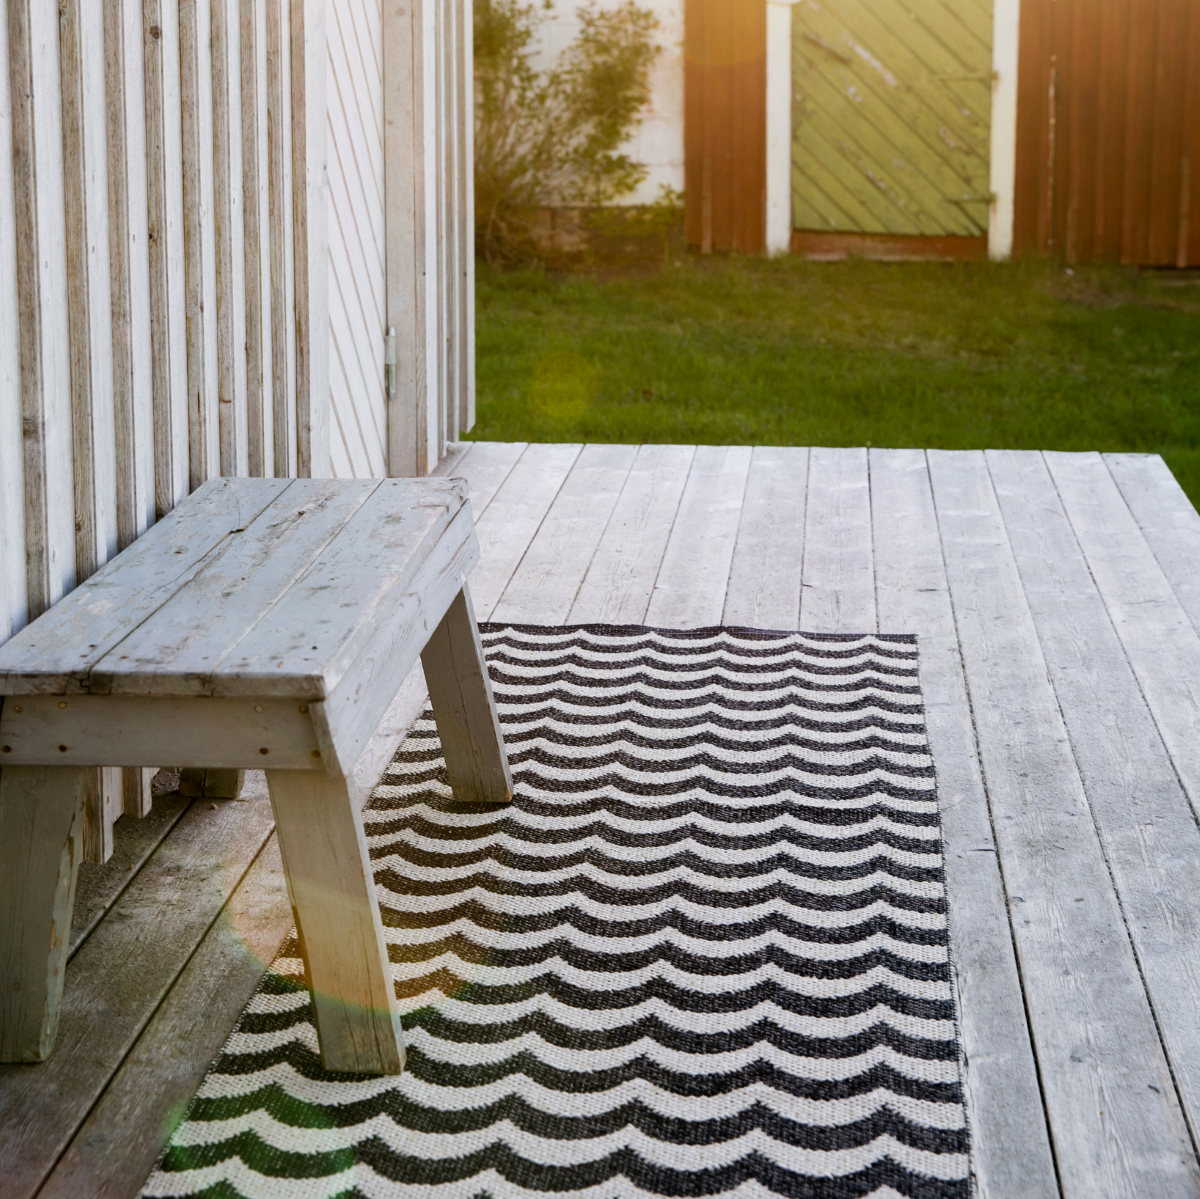 delikatissen diseño sueco diseño nórdico alfombras suecas alfombras nórdicas alfombras exterior Alfombras de plástico Brita Sweden alfombras de diseño 